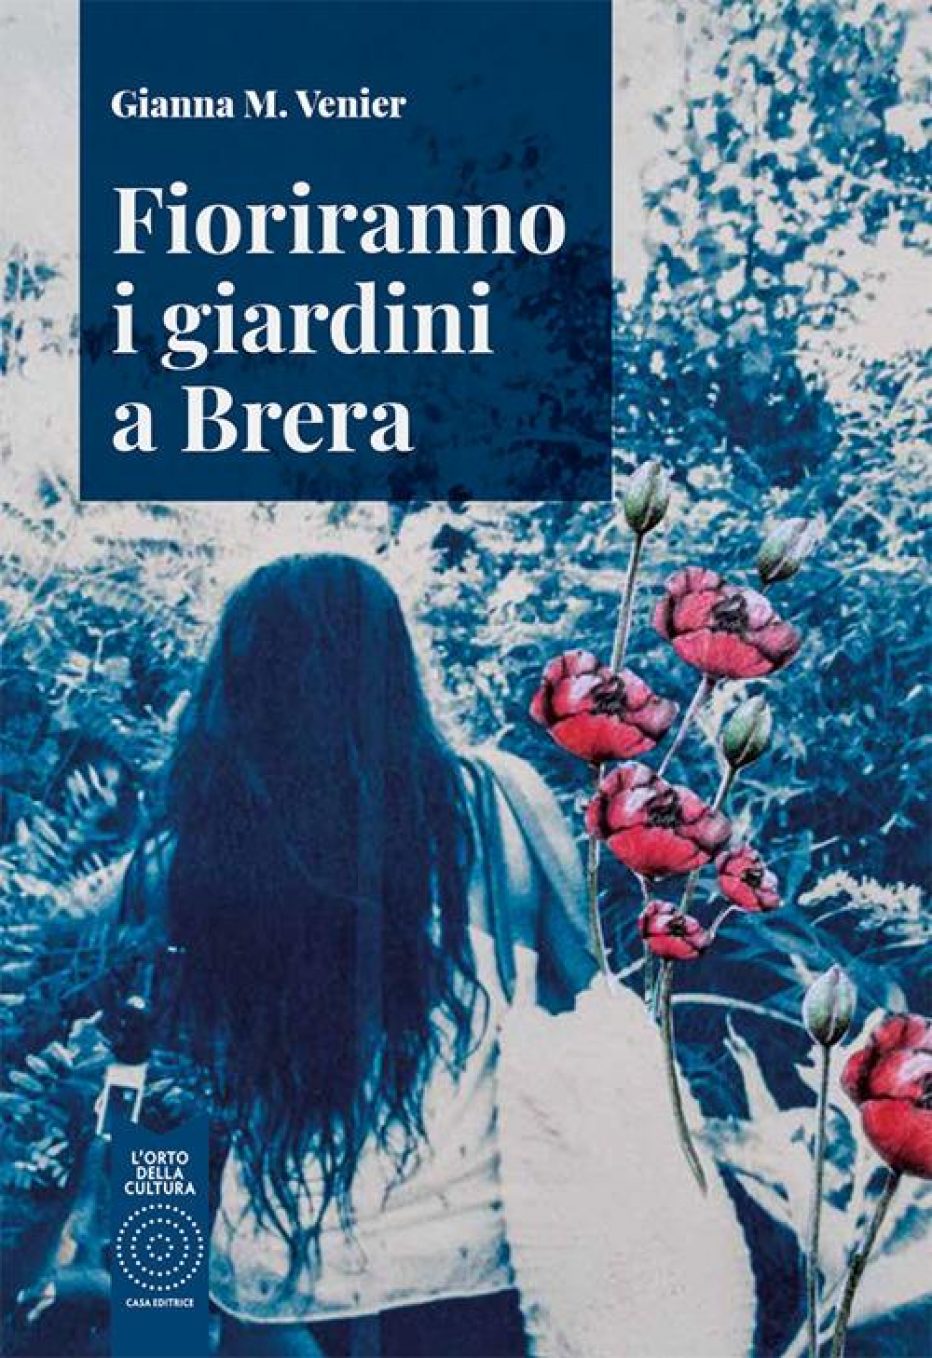 ‘Fioriranno i giardini a Brera’ di Gianna M. Venier